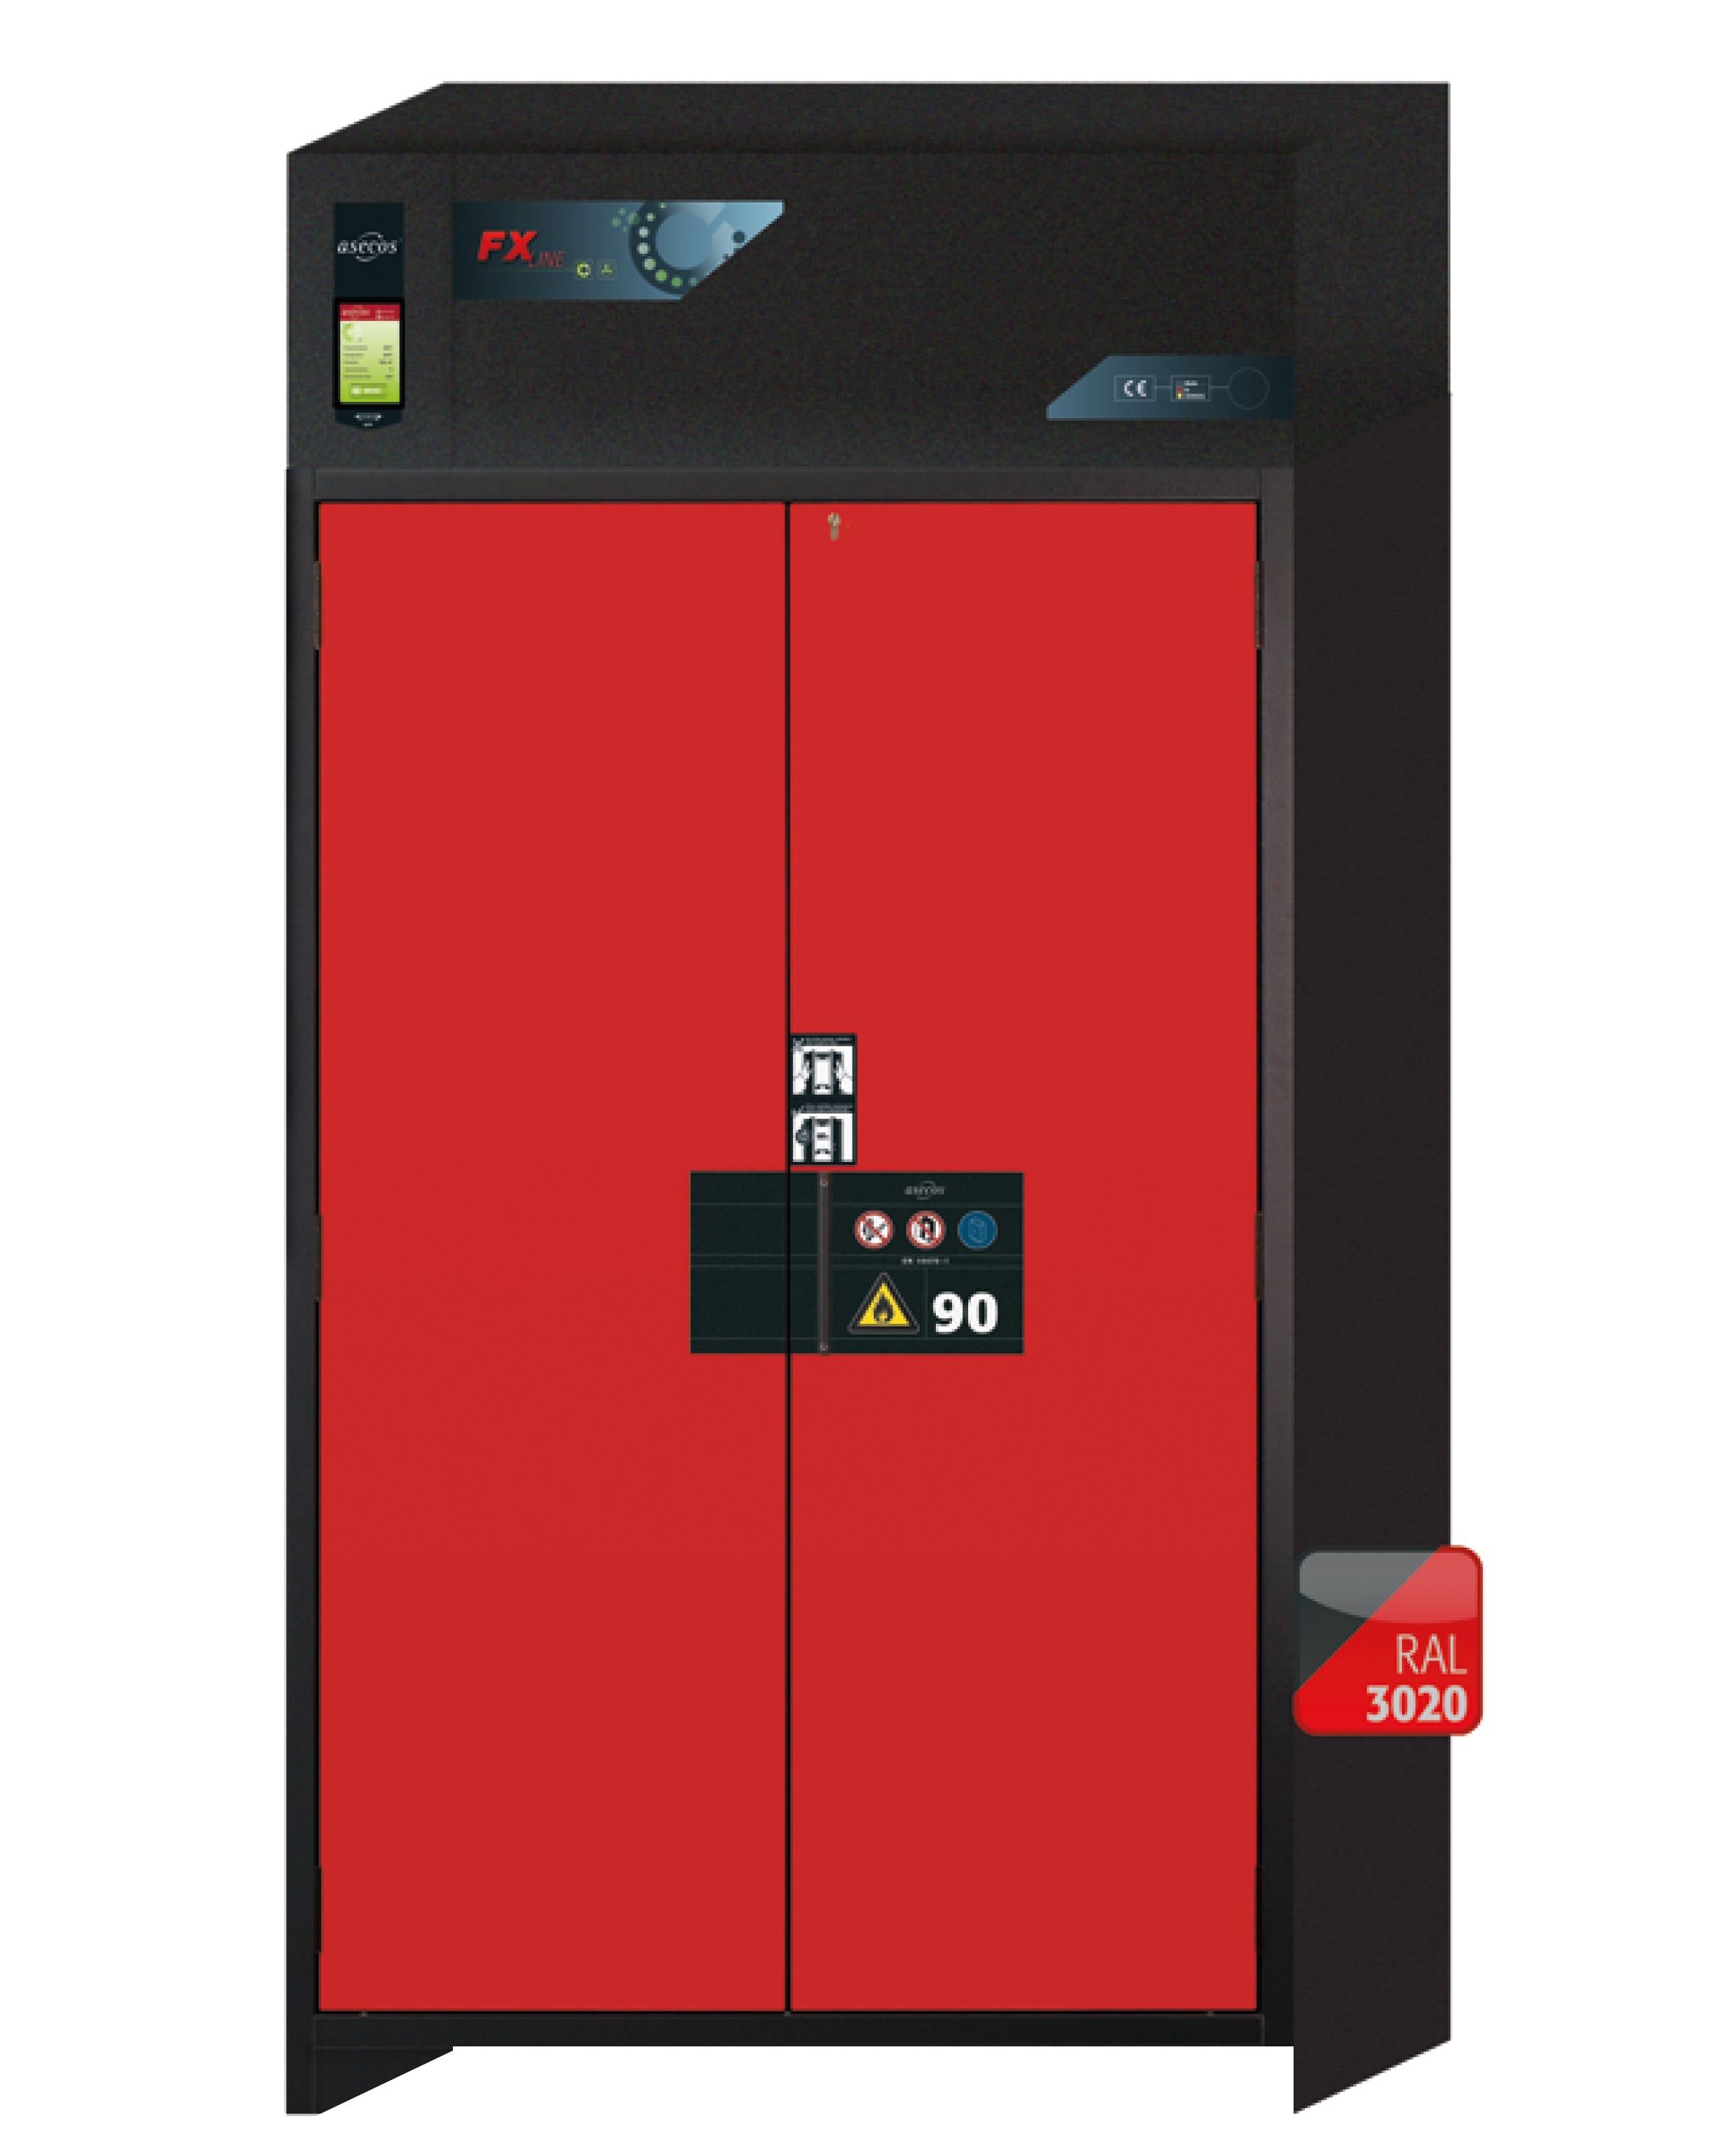 Armoire de filtration d'air recyclé type 90 FX-PEGASUS-90 modèle FX90.229.120.WDAC en rouge signalisation RAL 3020 avec 5 plateaux coulissants standard (acier inoxydable 1.4301)